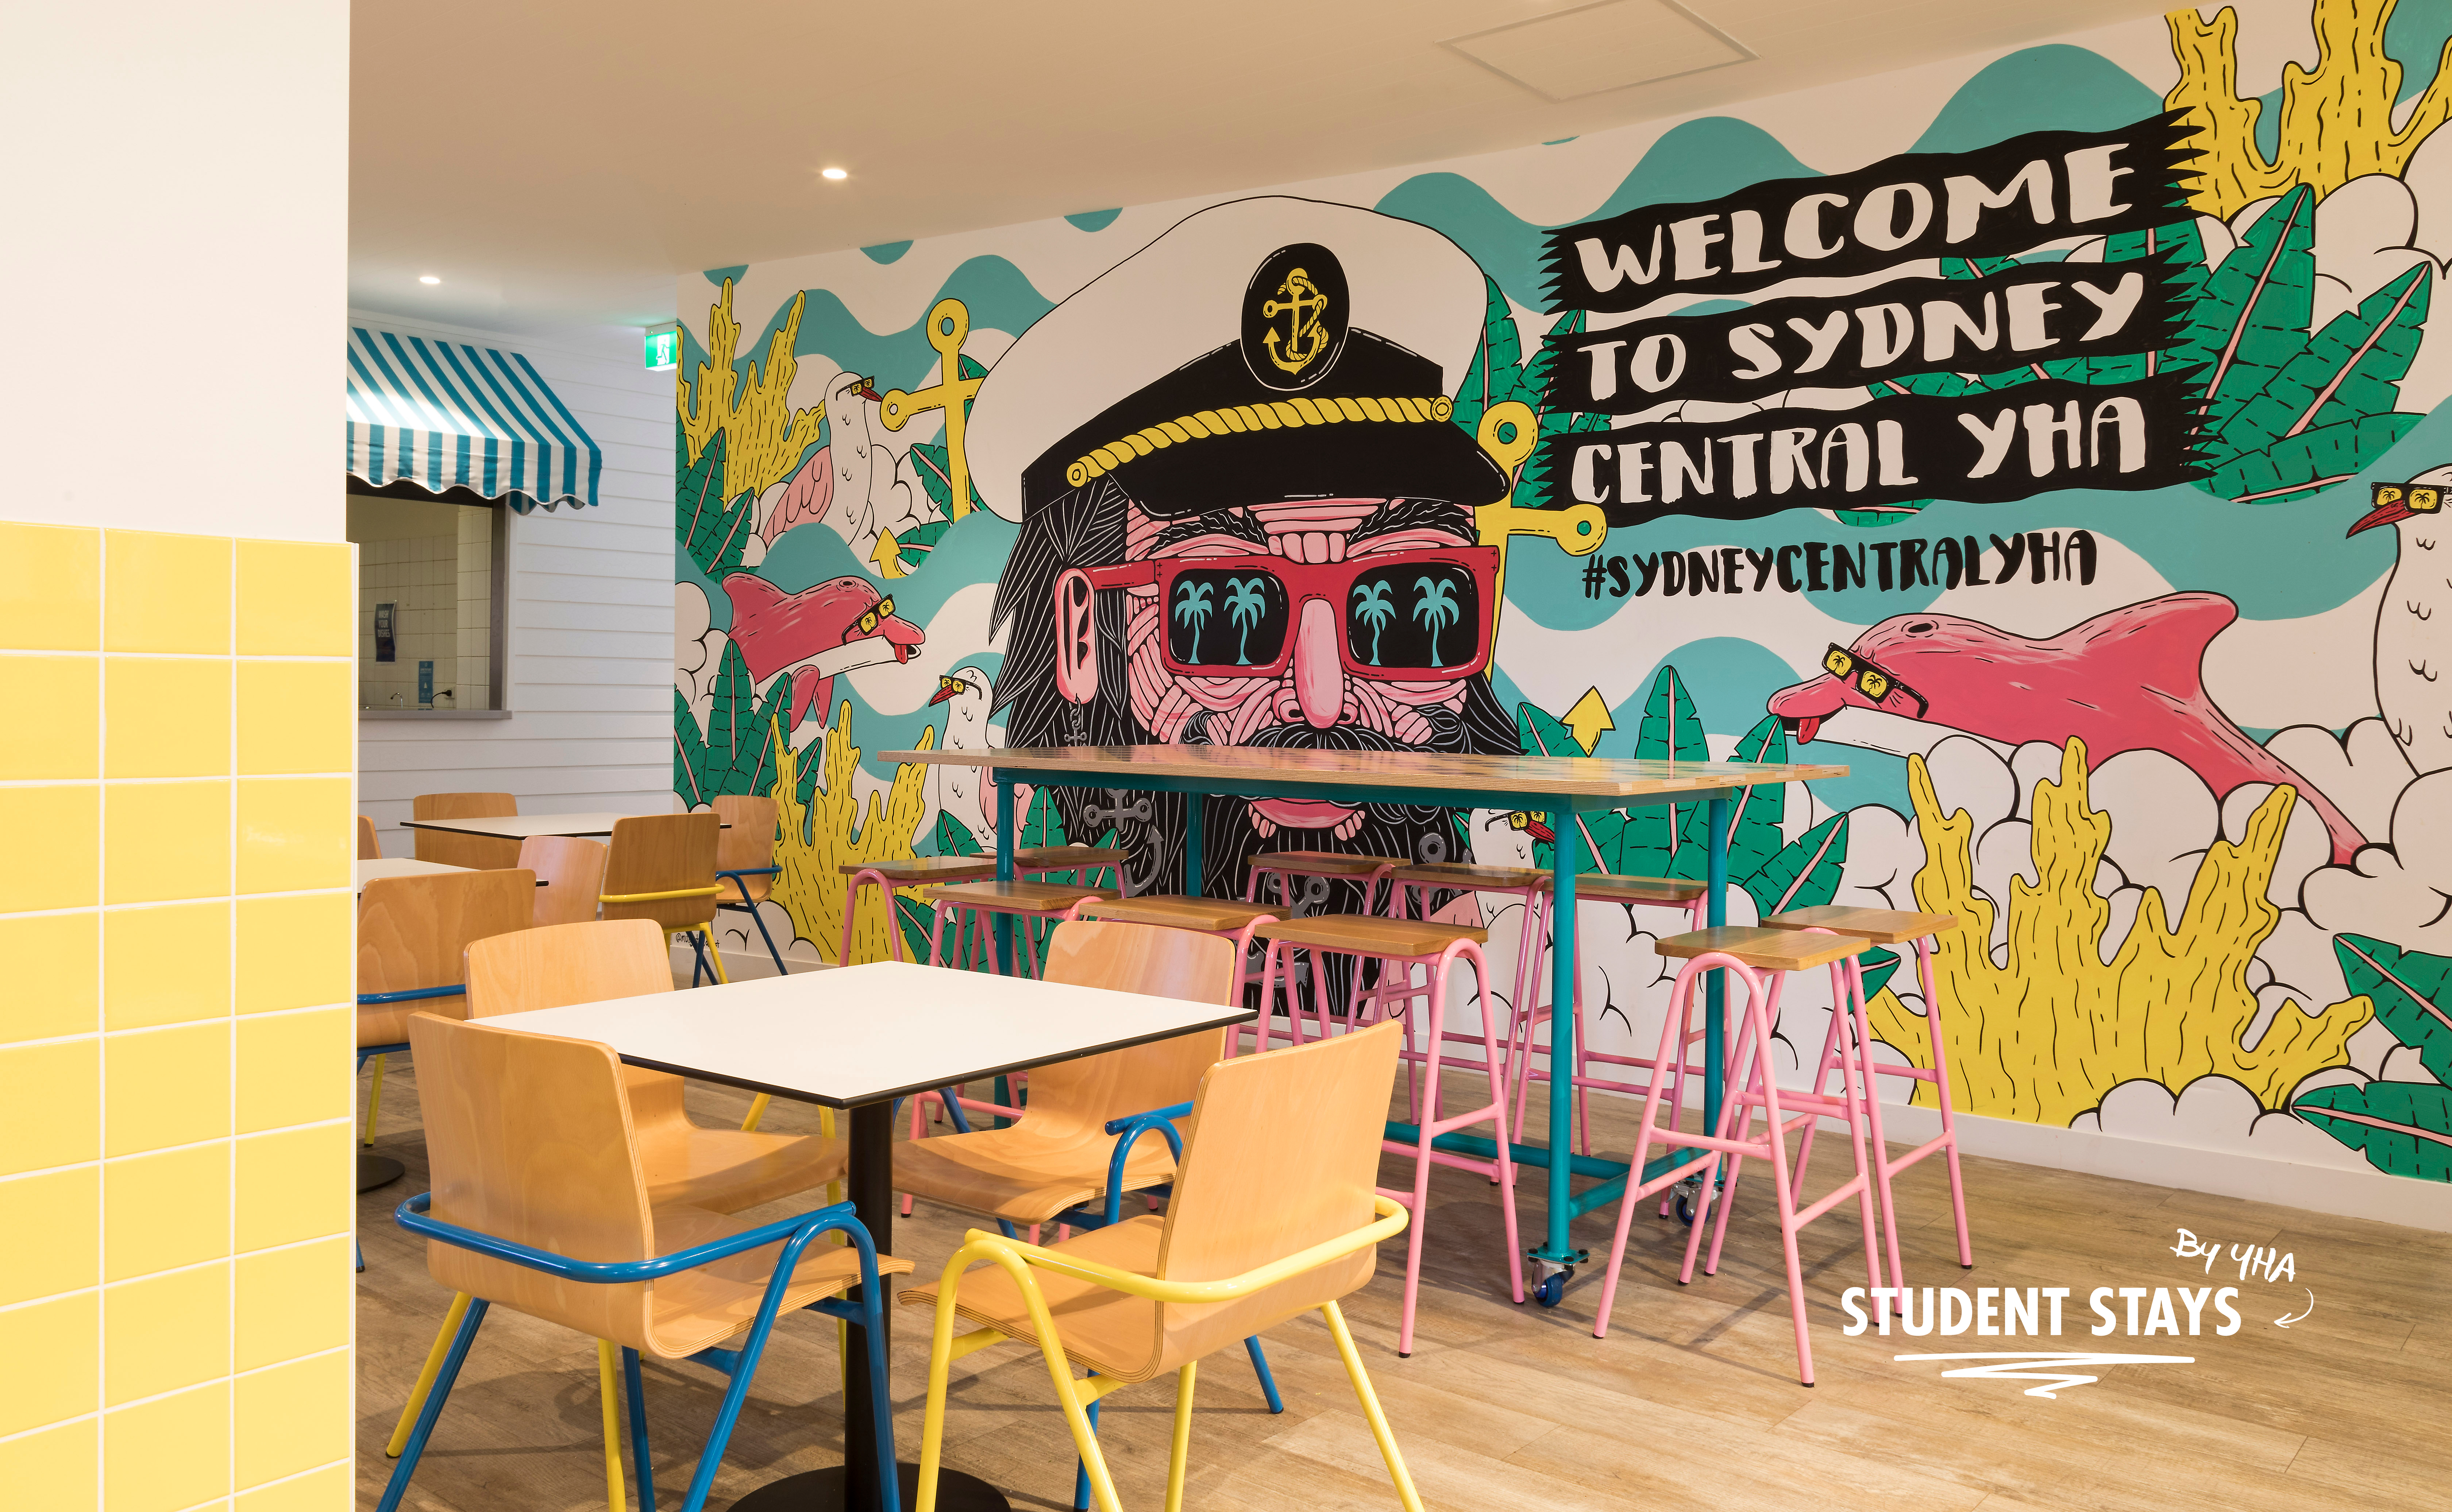 Sydney Central YHA_dining_2017_studentstays.jpg